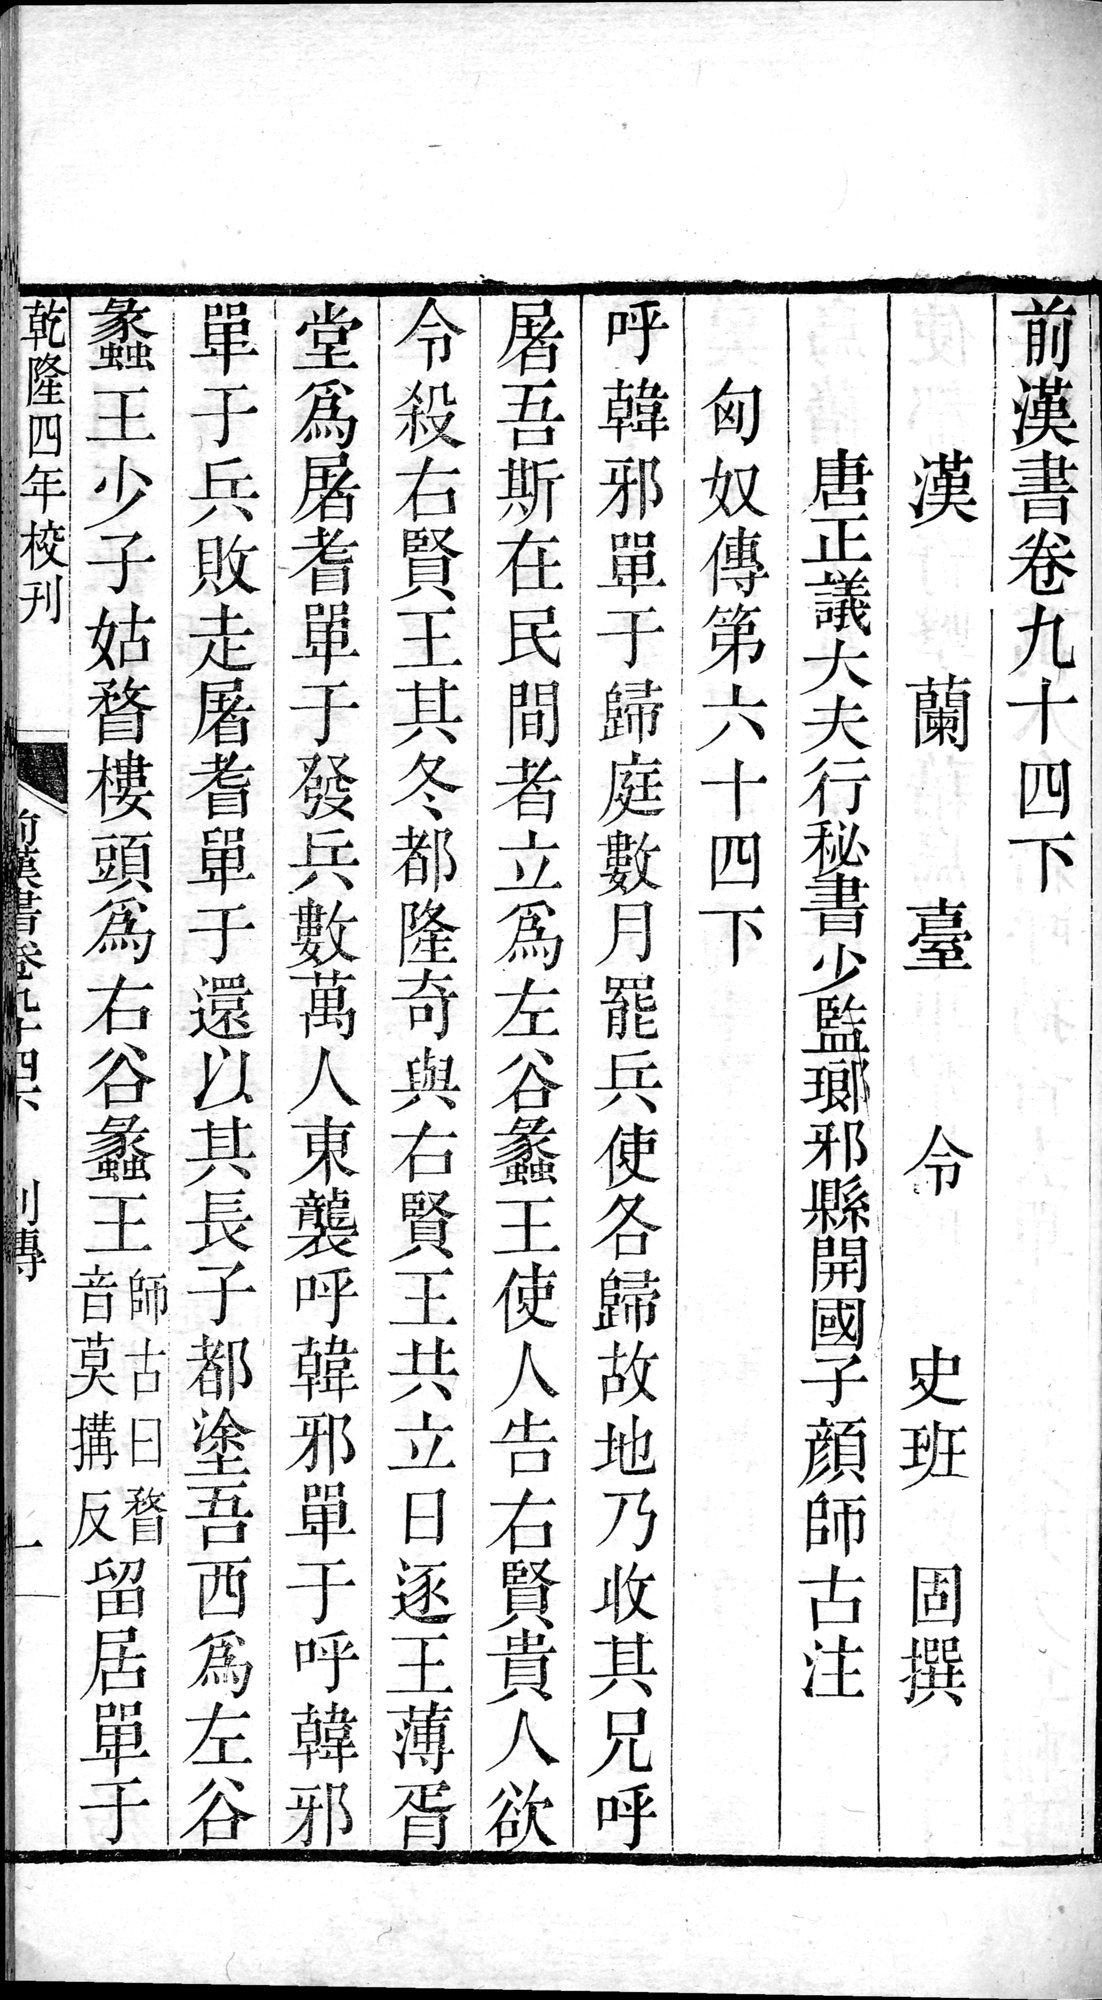 前漢書 : vol.94 bottom / Page 1 (Grayscale High Resolution Image)